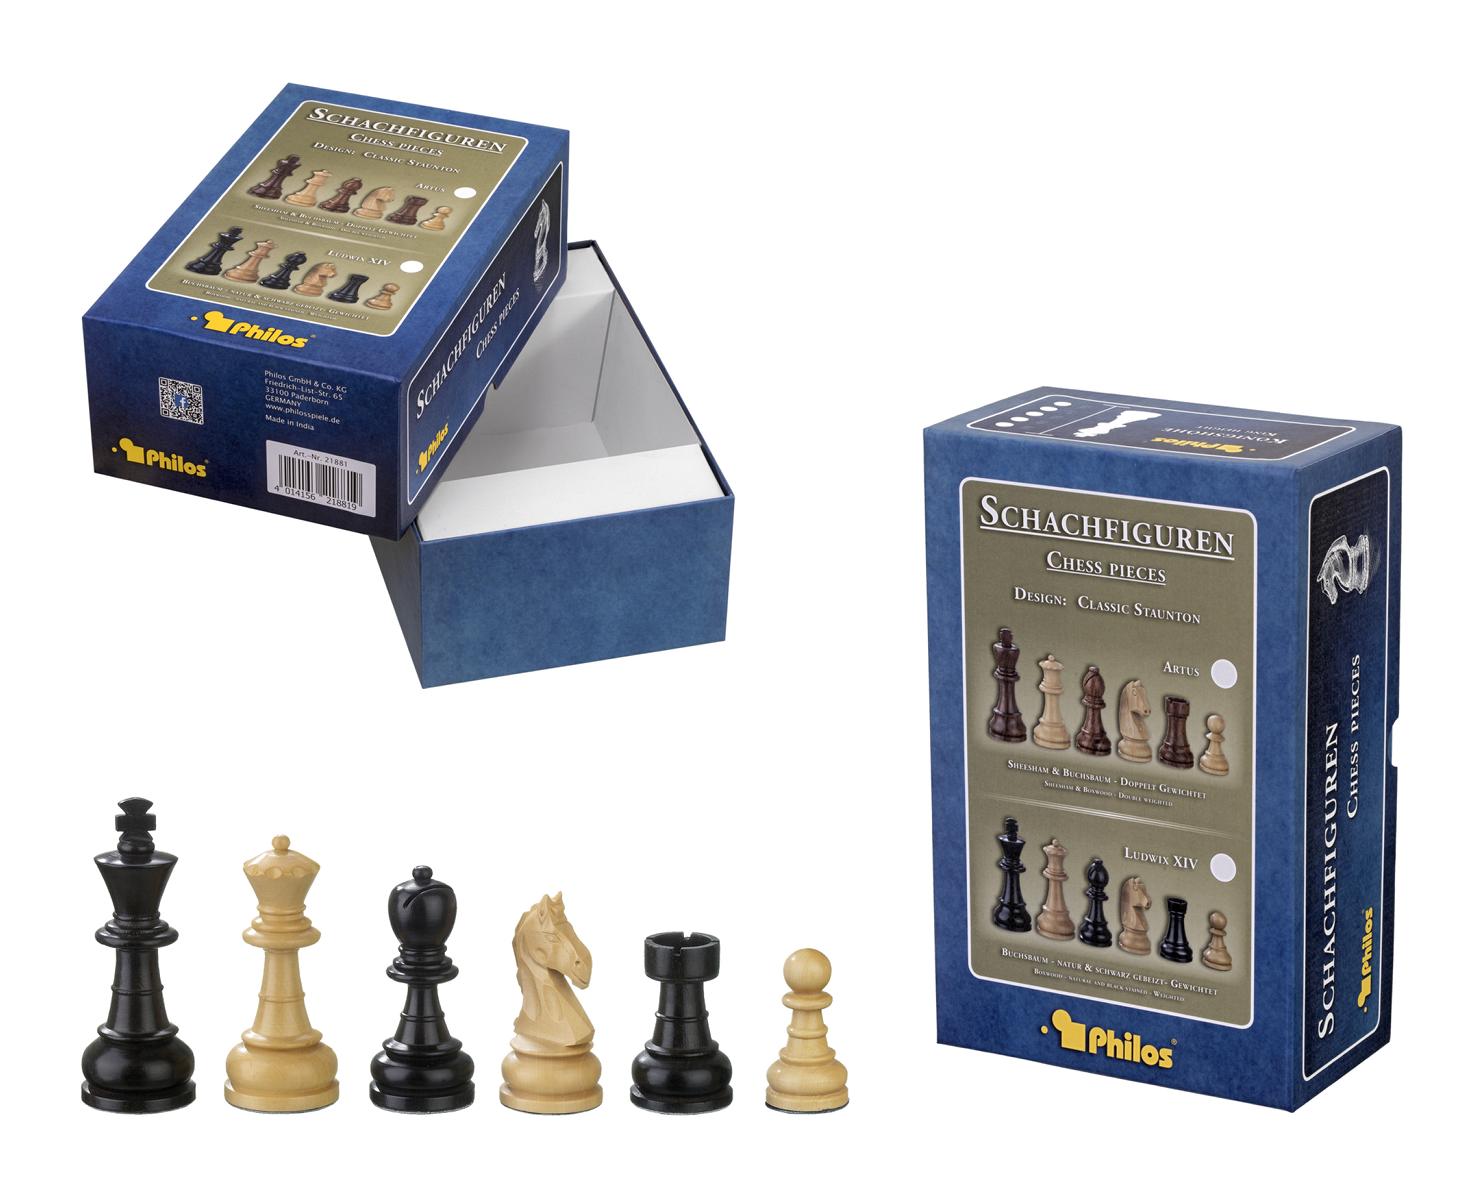 Schachfiguren Chlodewig, Königshöhe 83 mm, in Set-Up Box